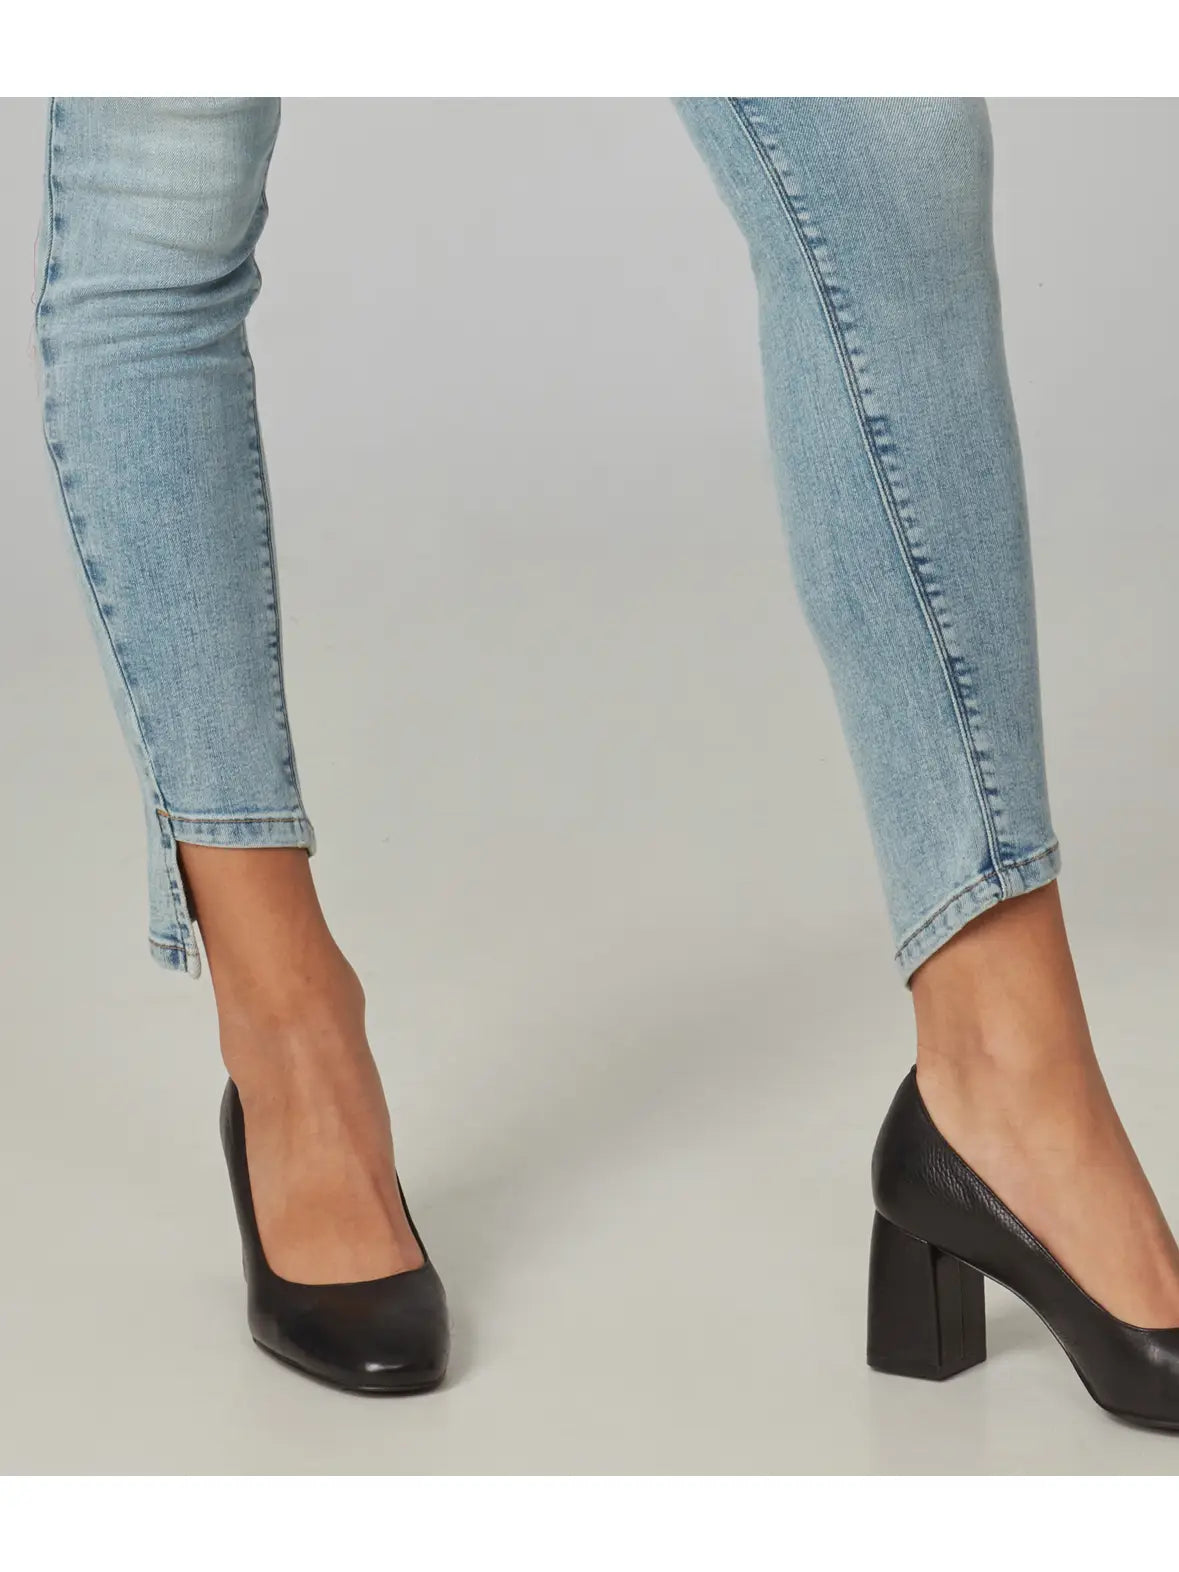 Alexa High Rise Skinny Jeans